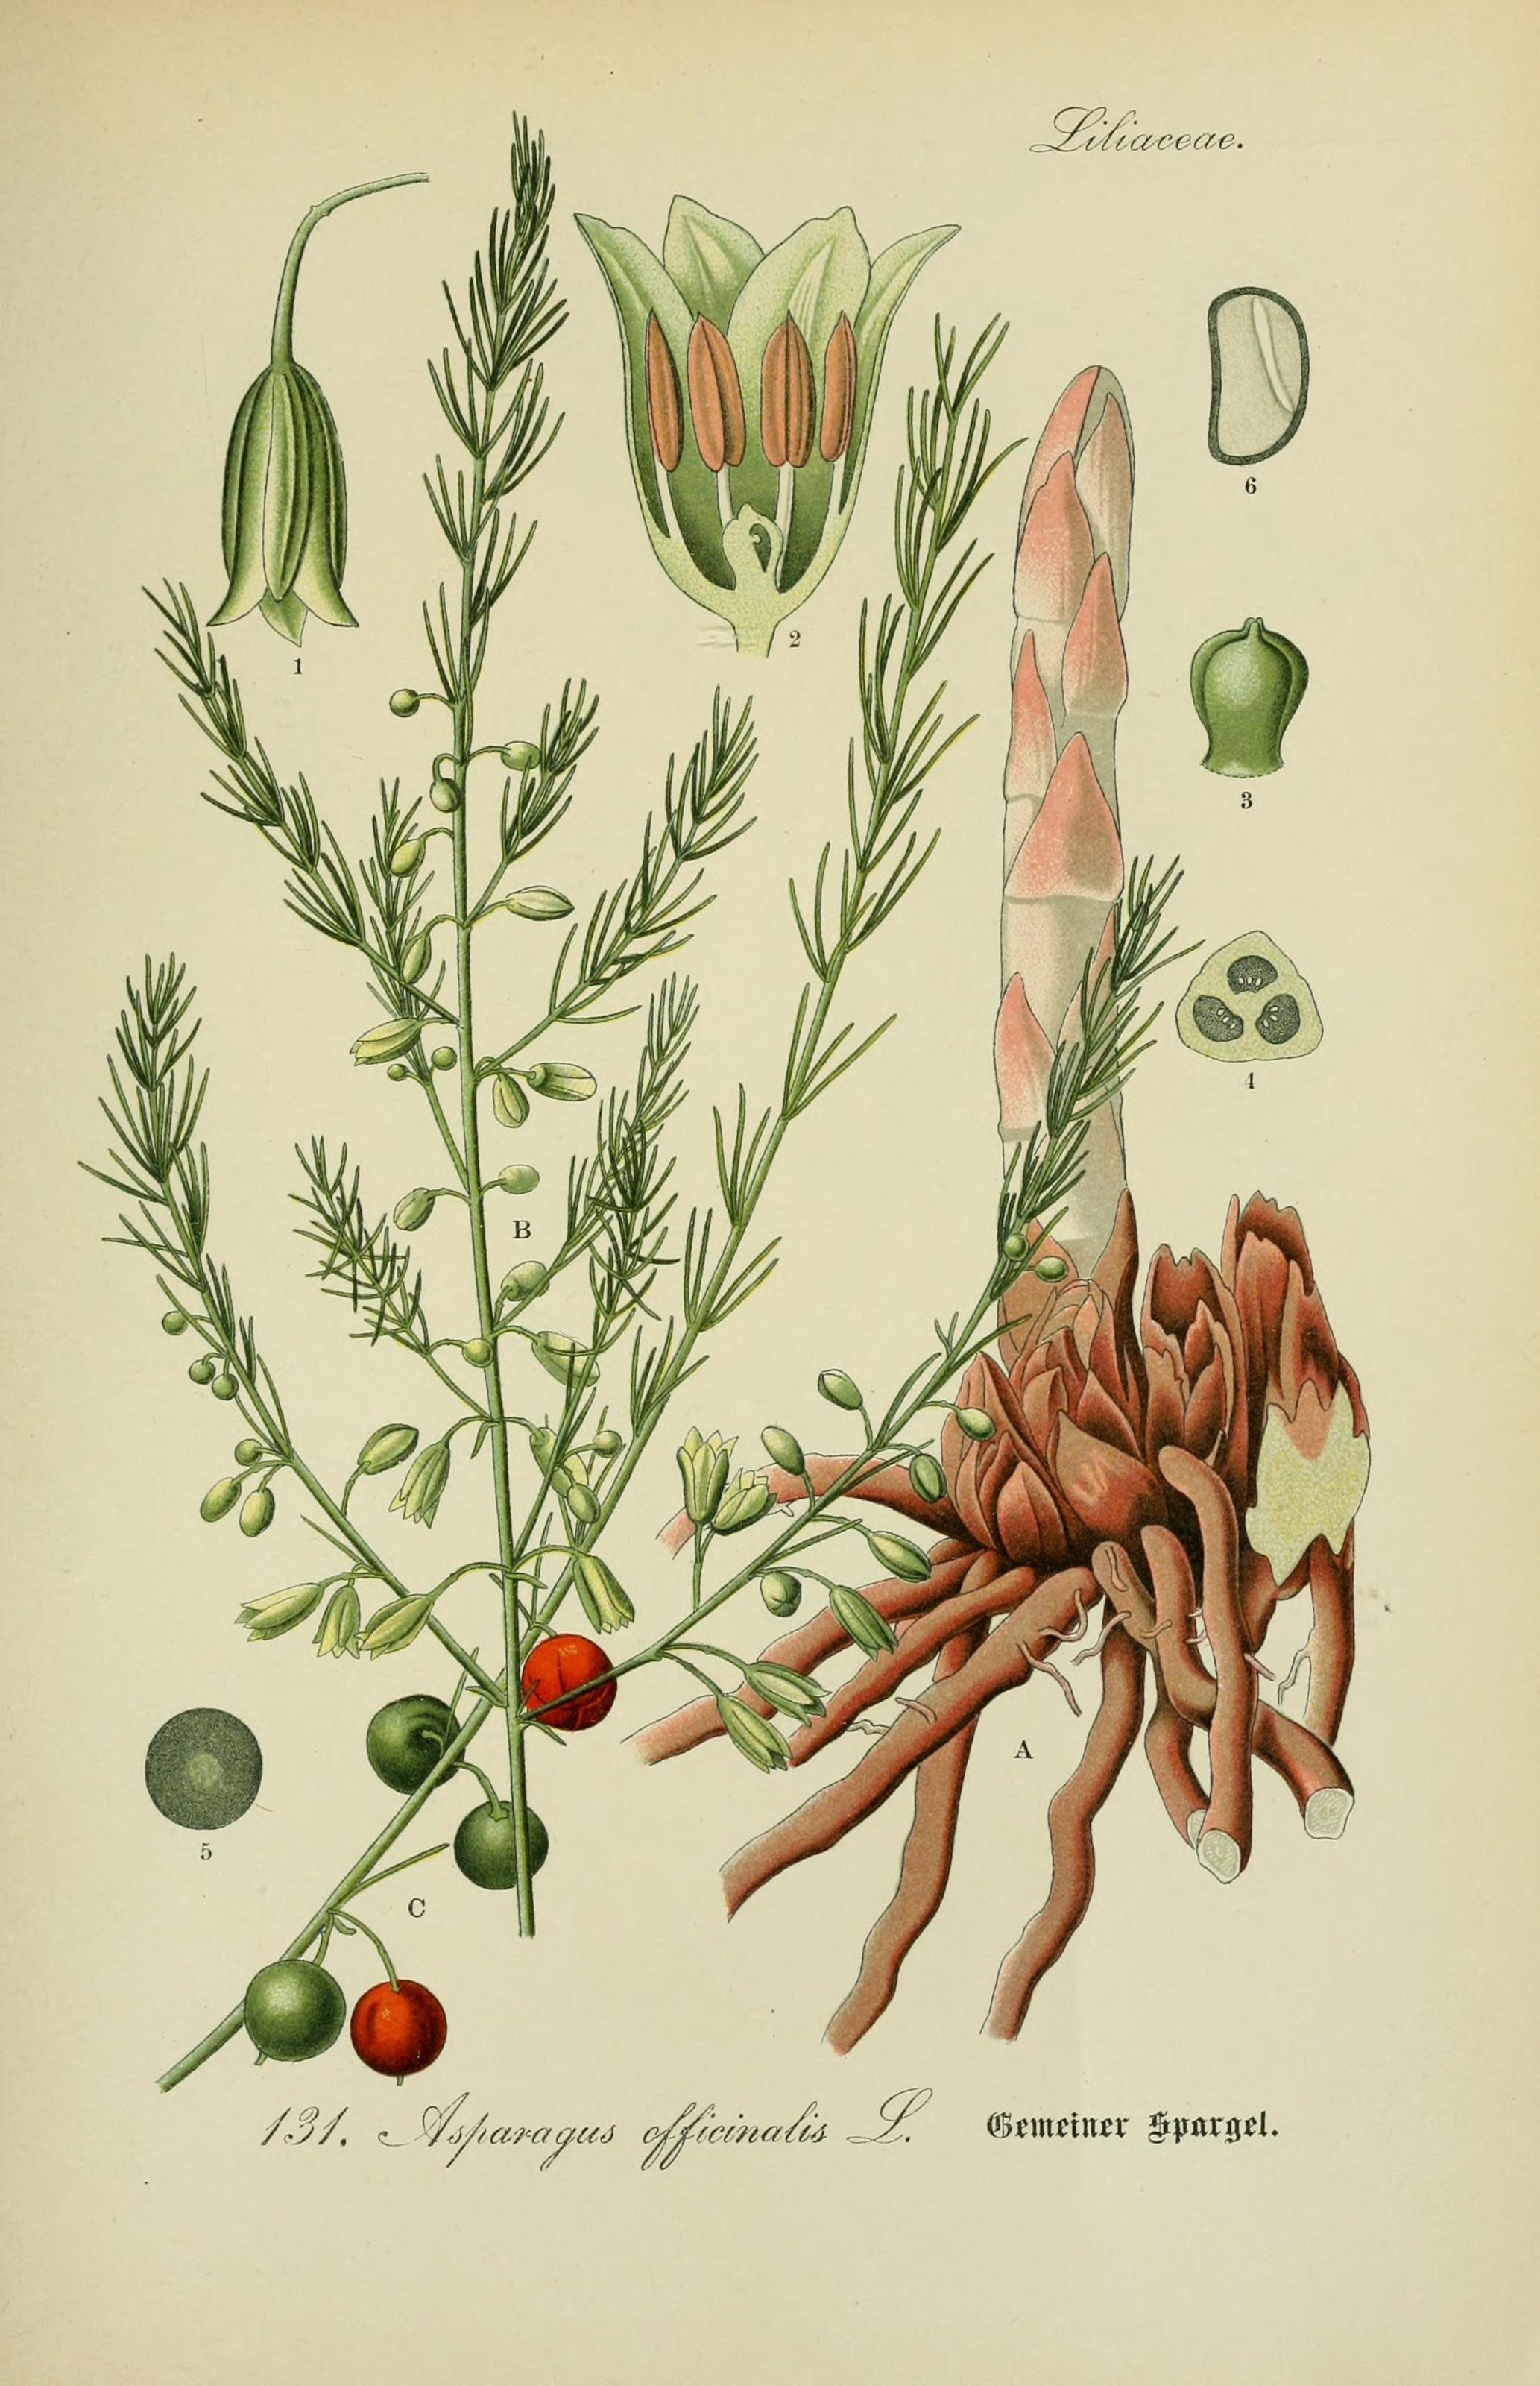 Auf dem Bild ist eine Zeichnung von einer Spargel-pflanze